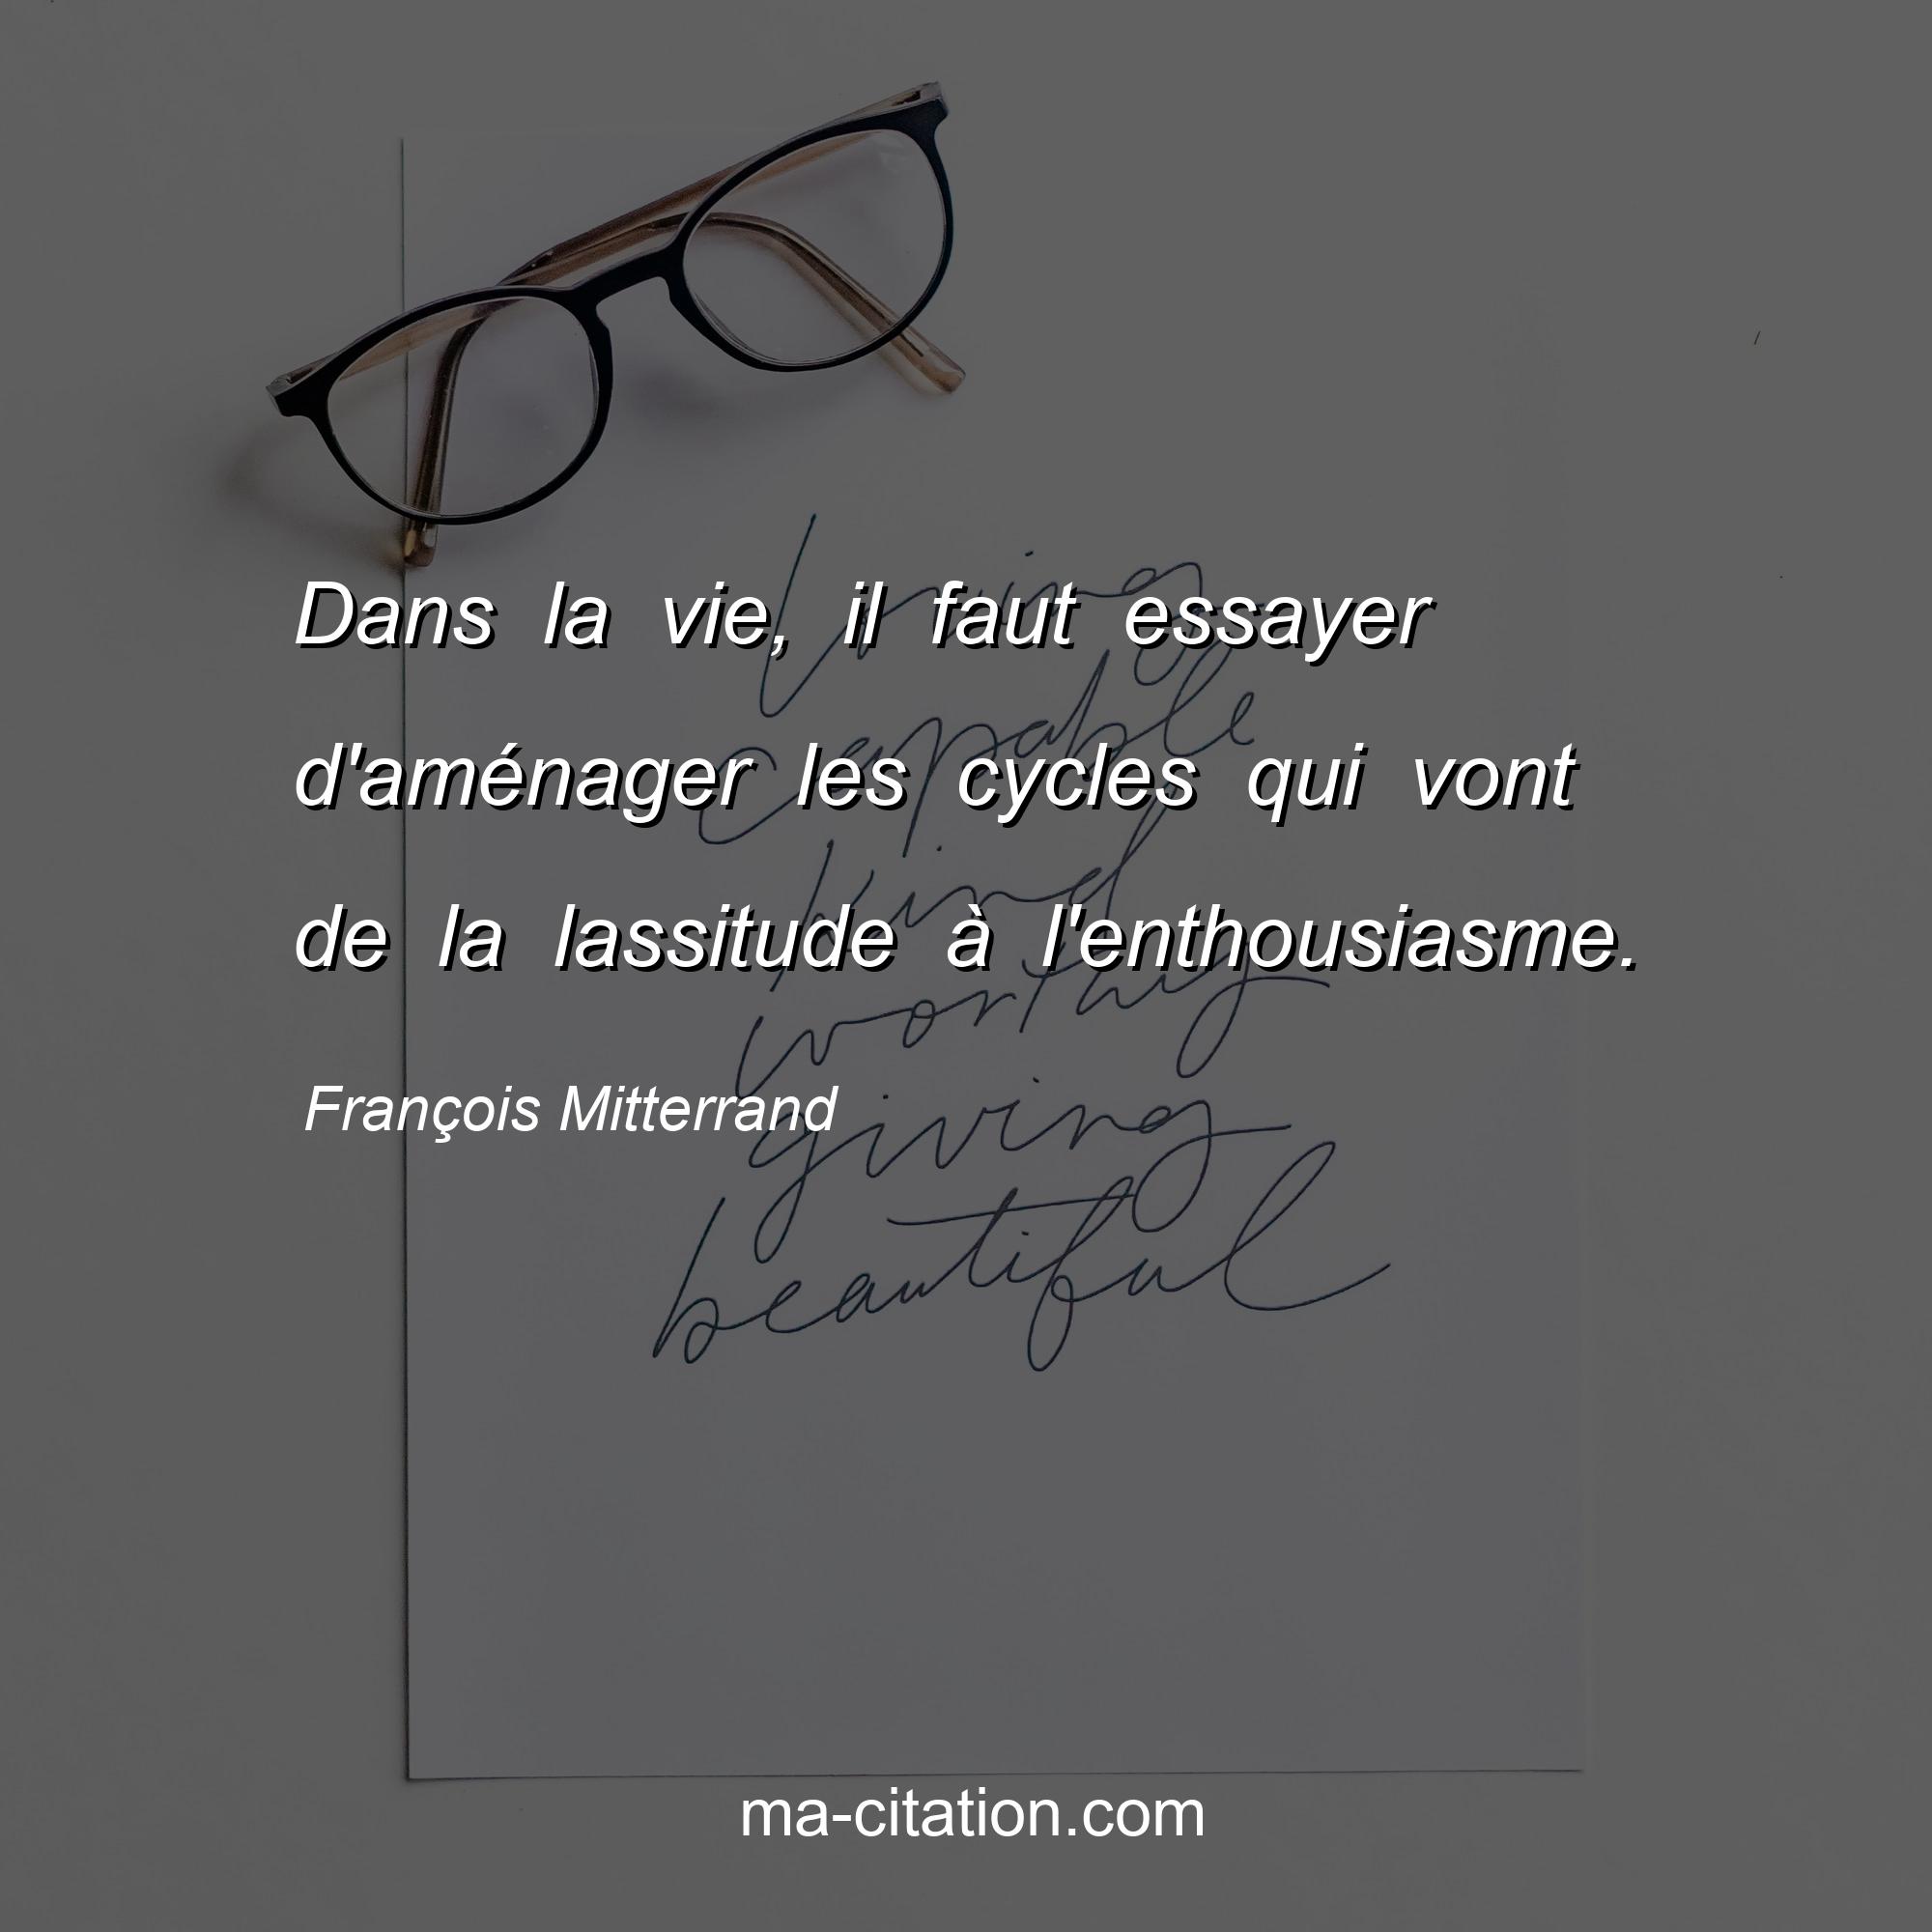 François Mitterrand : Dans la vie, il faut essayer d'aménager les cycles qui vont de la lassitude à l'enthousiasme.